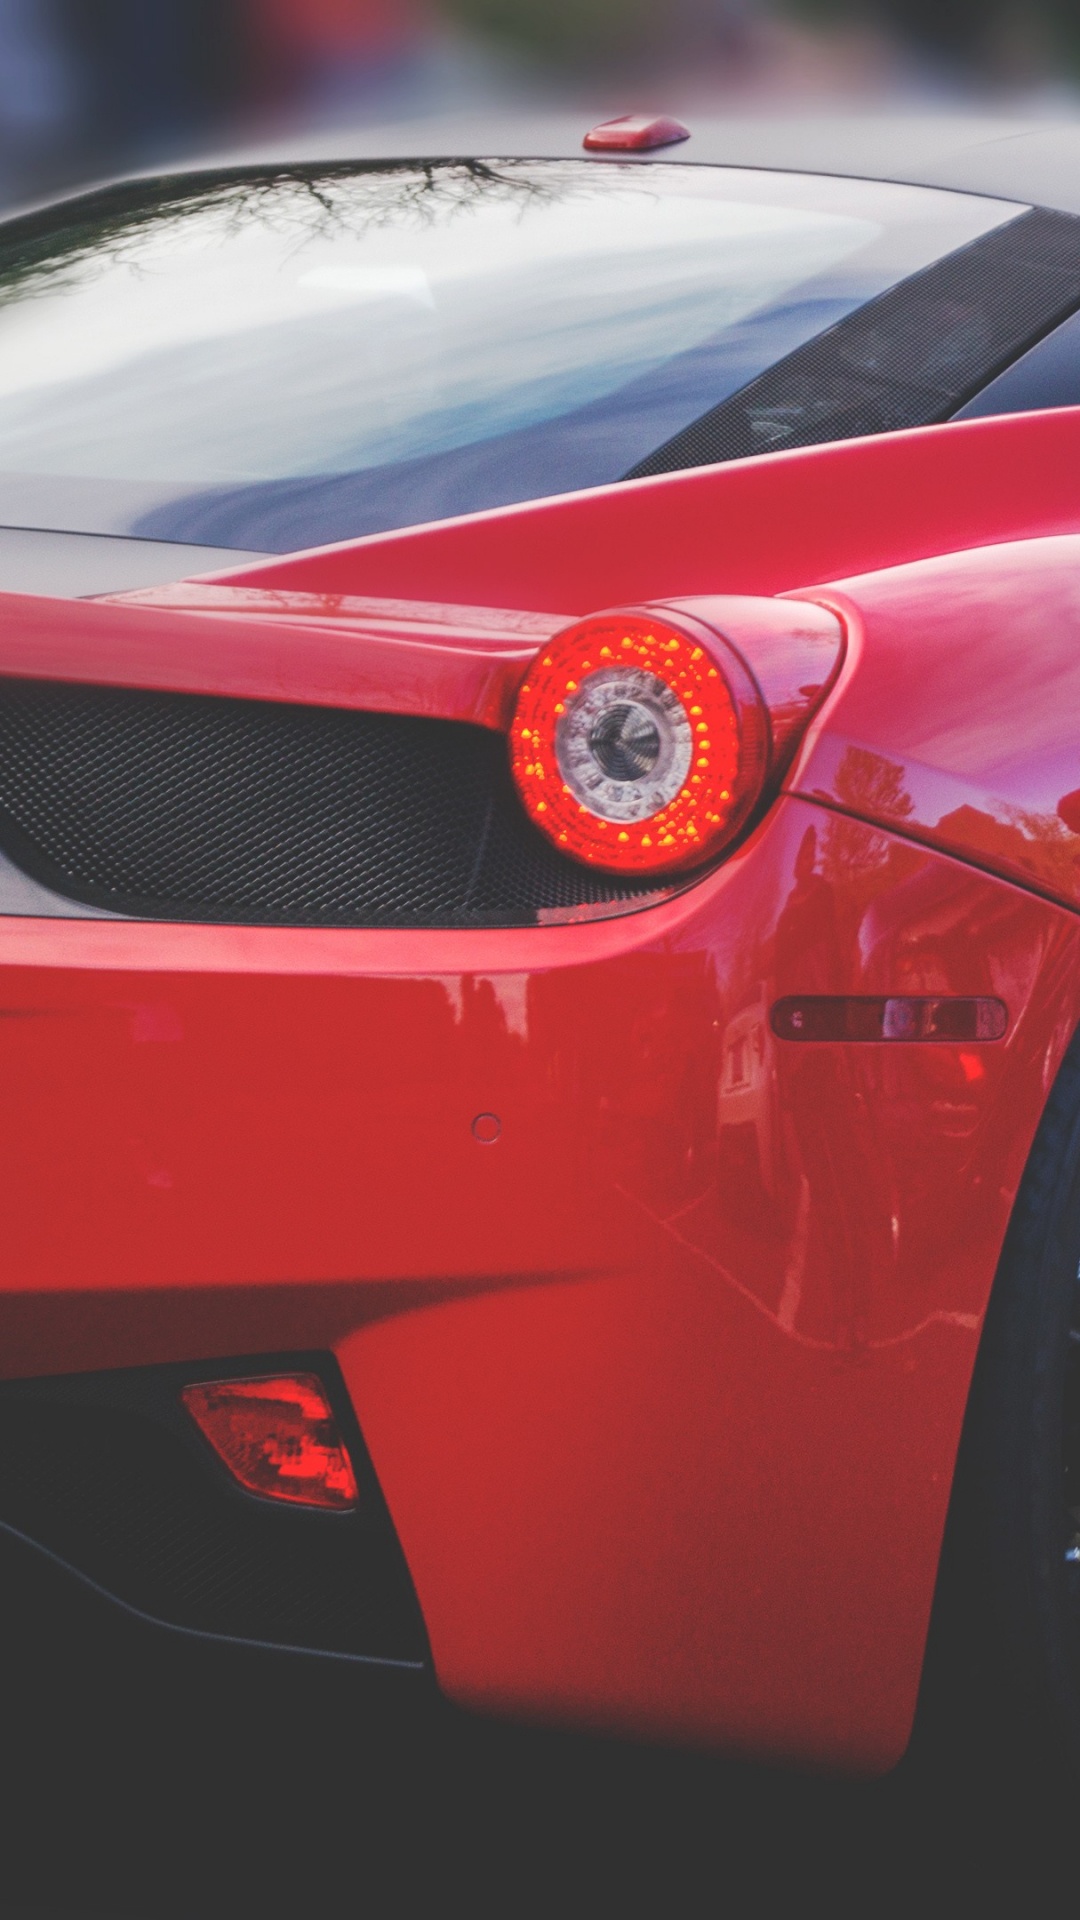 458法拉利, Ferrari, 超级跑车, 福特gt, 性能车 壁纸 1080x1920 允许